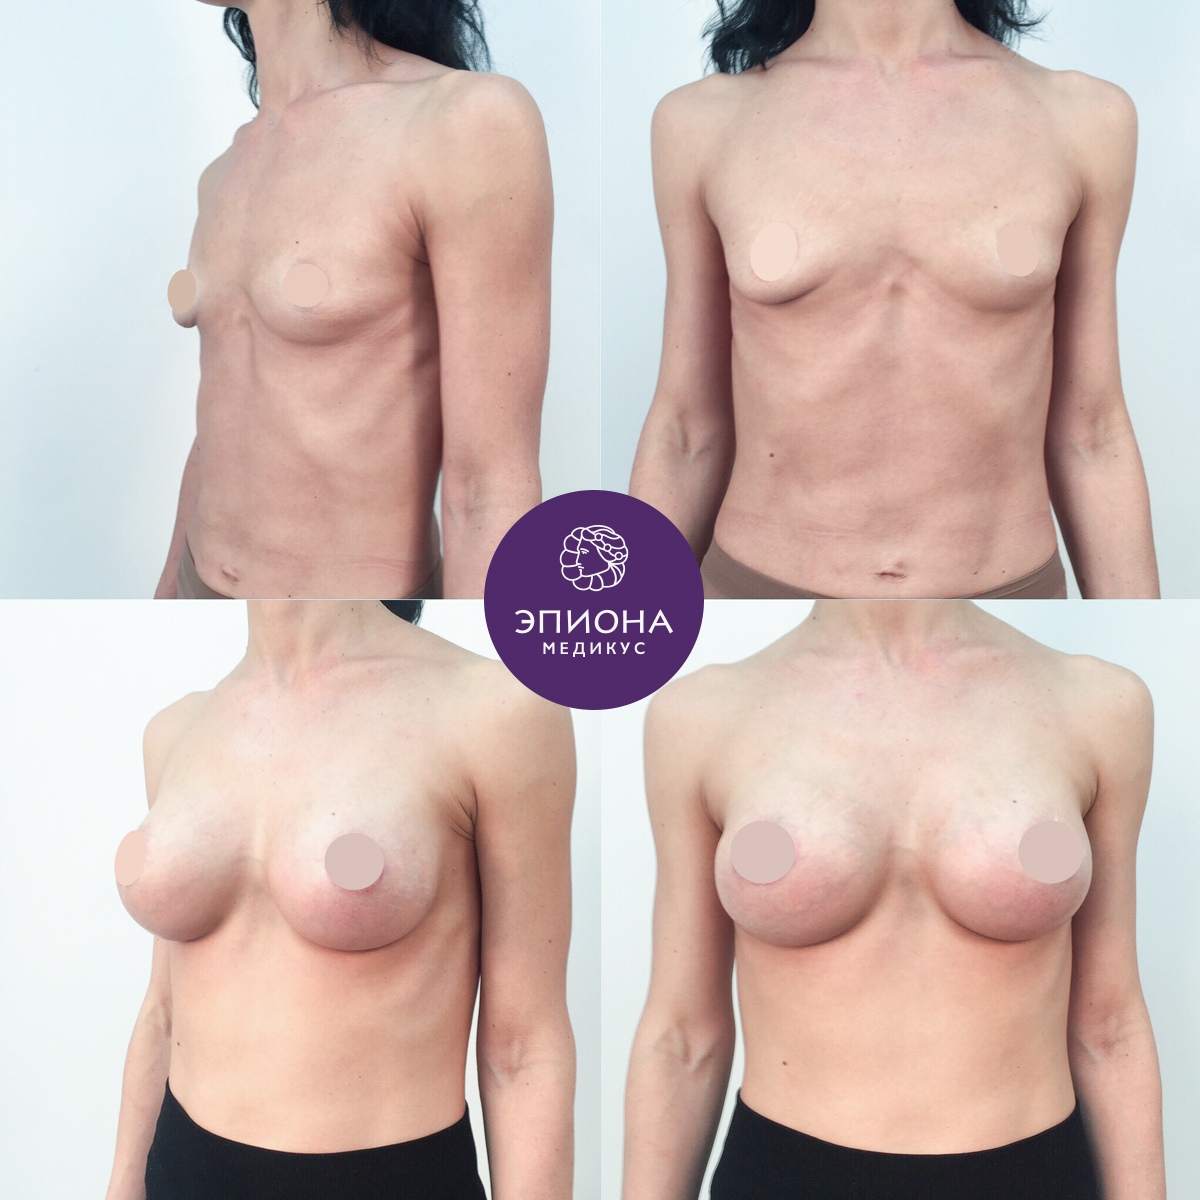 как делают пластическую операцию груди женщин фото 101